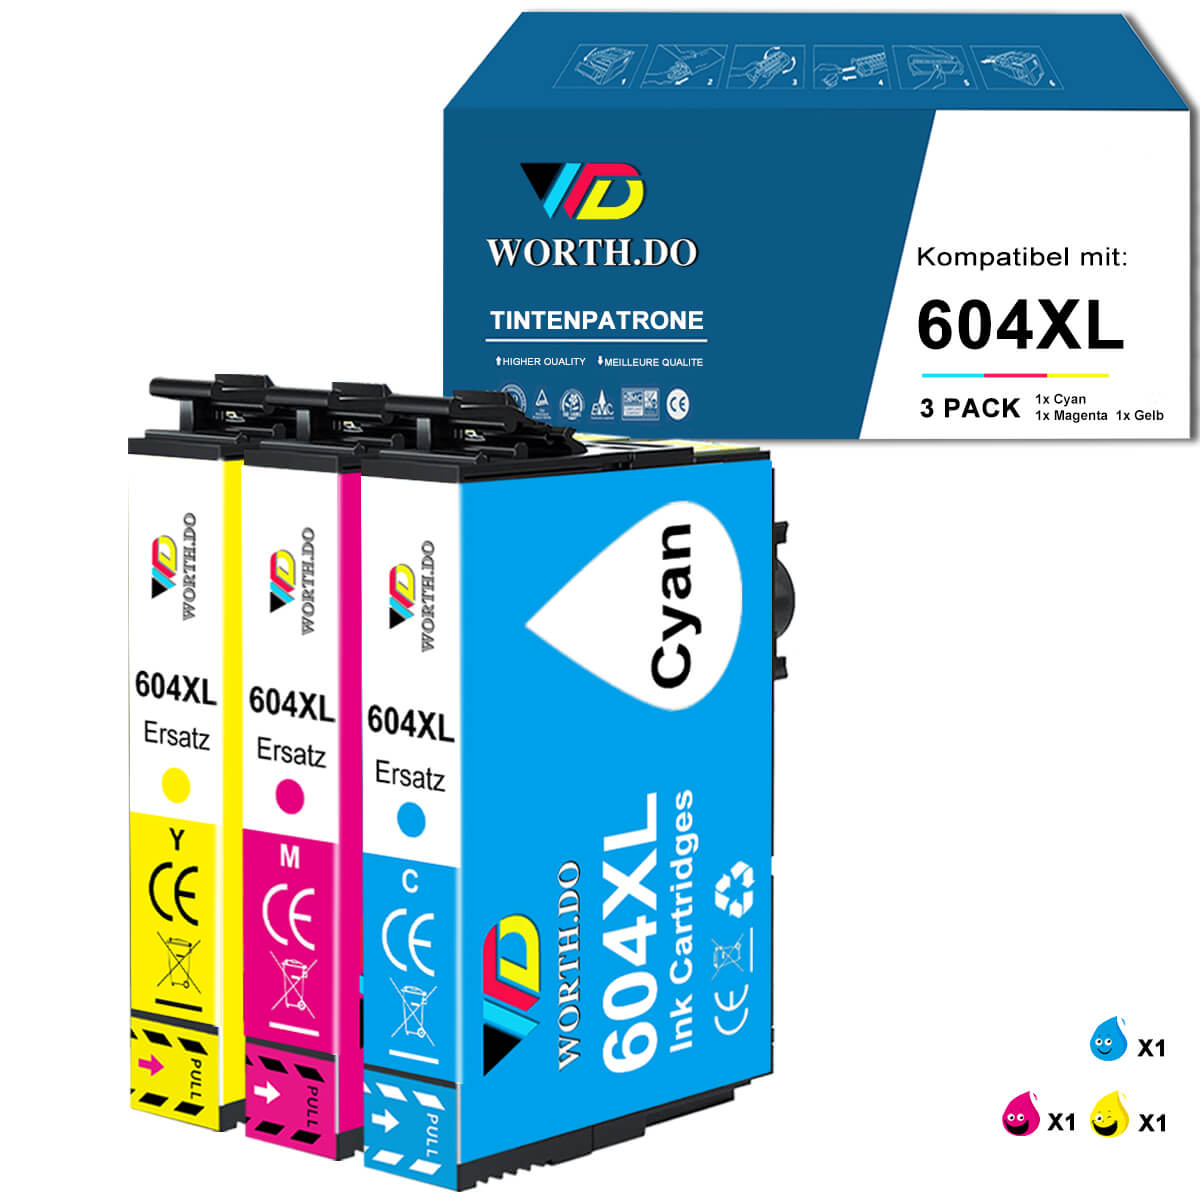 Kompatibel Epson 604XL Tintenpatrone (3 Farbe)